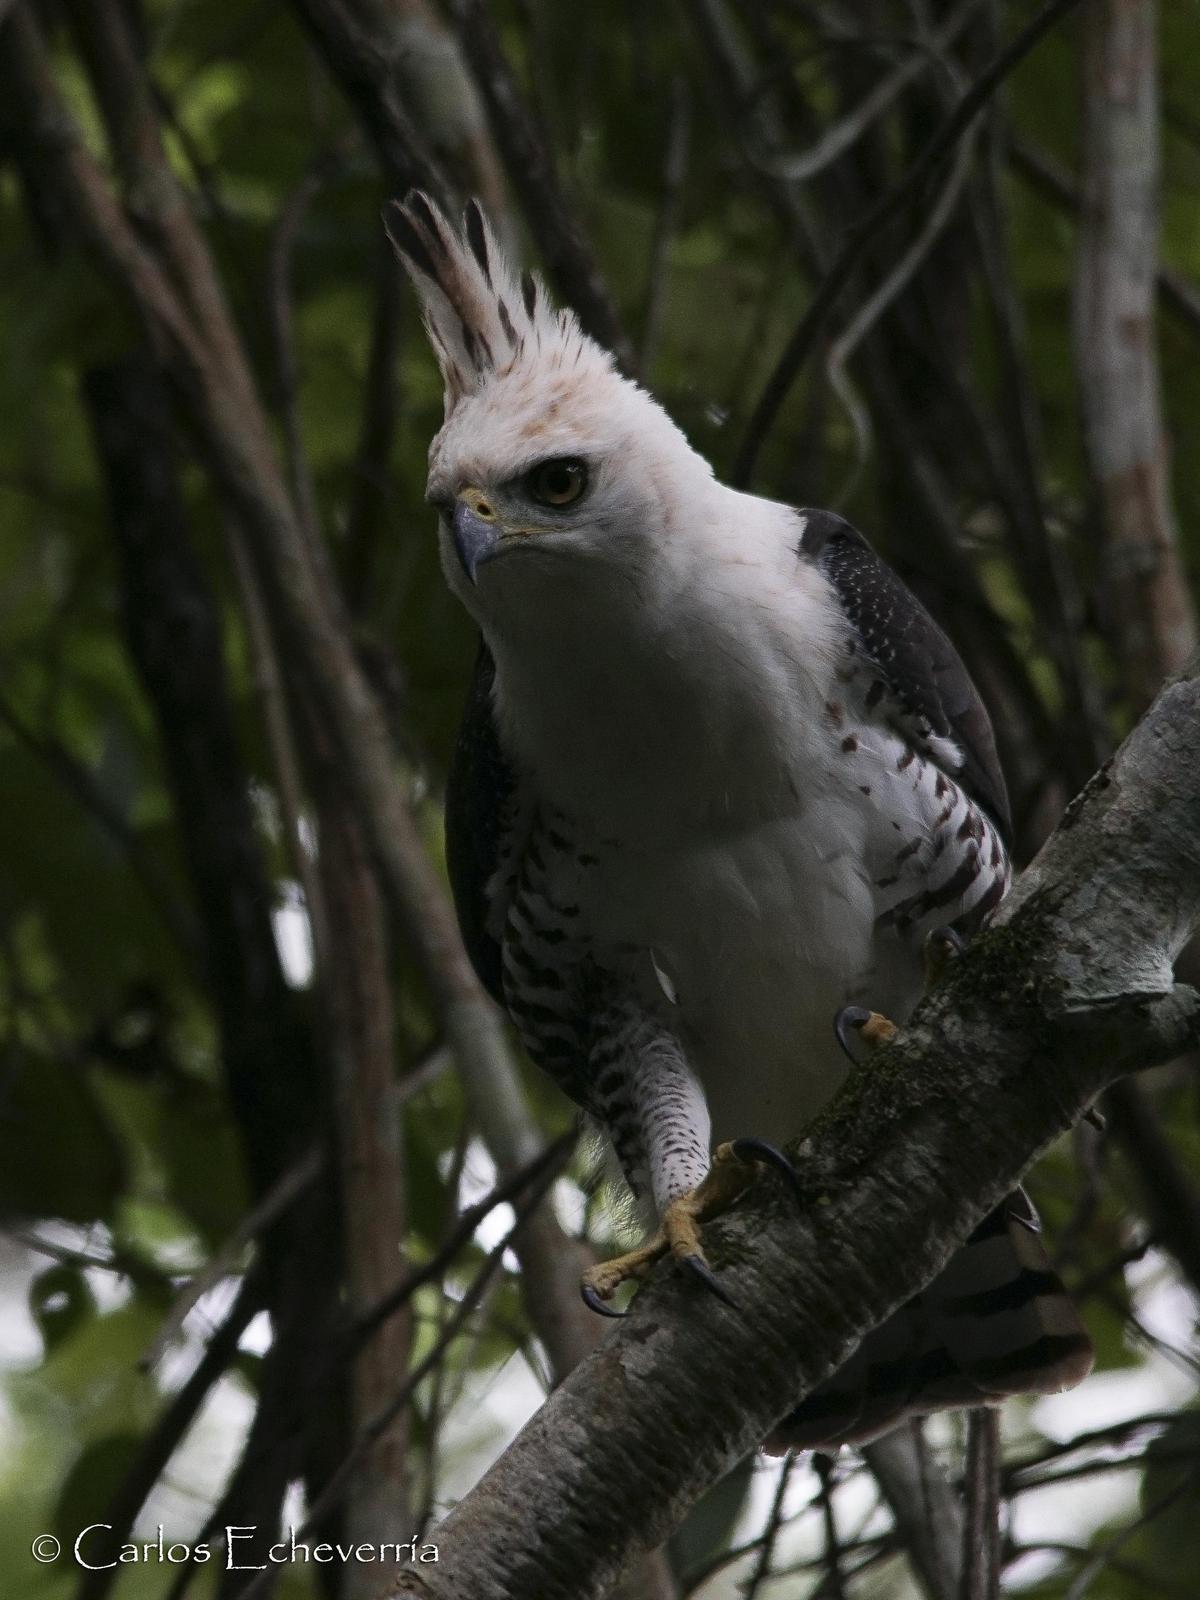 Ornate Hawk-Eagle Photo by Carlos Echeverría